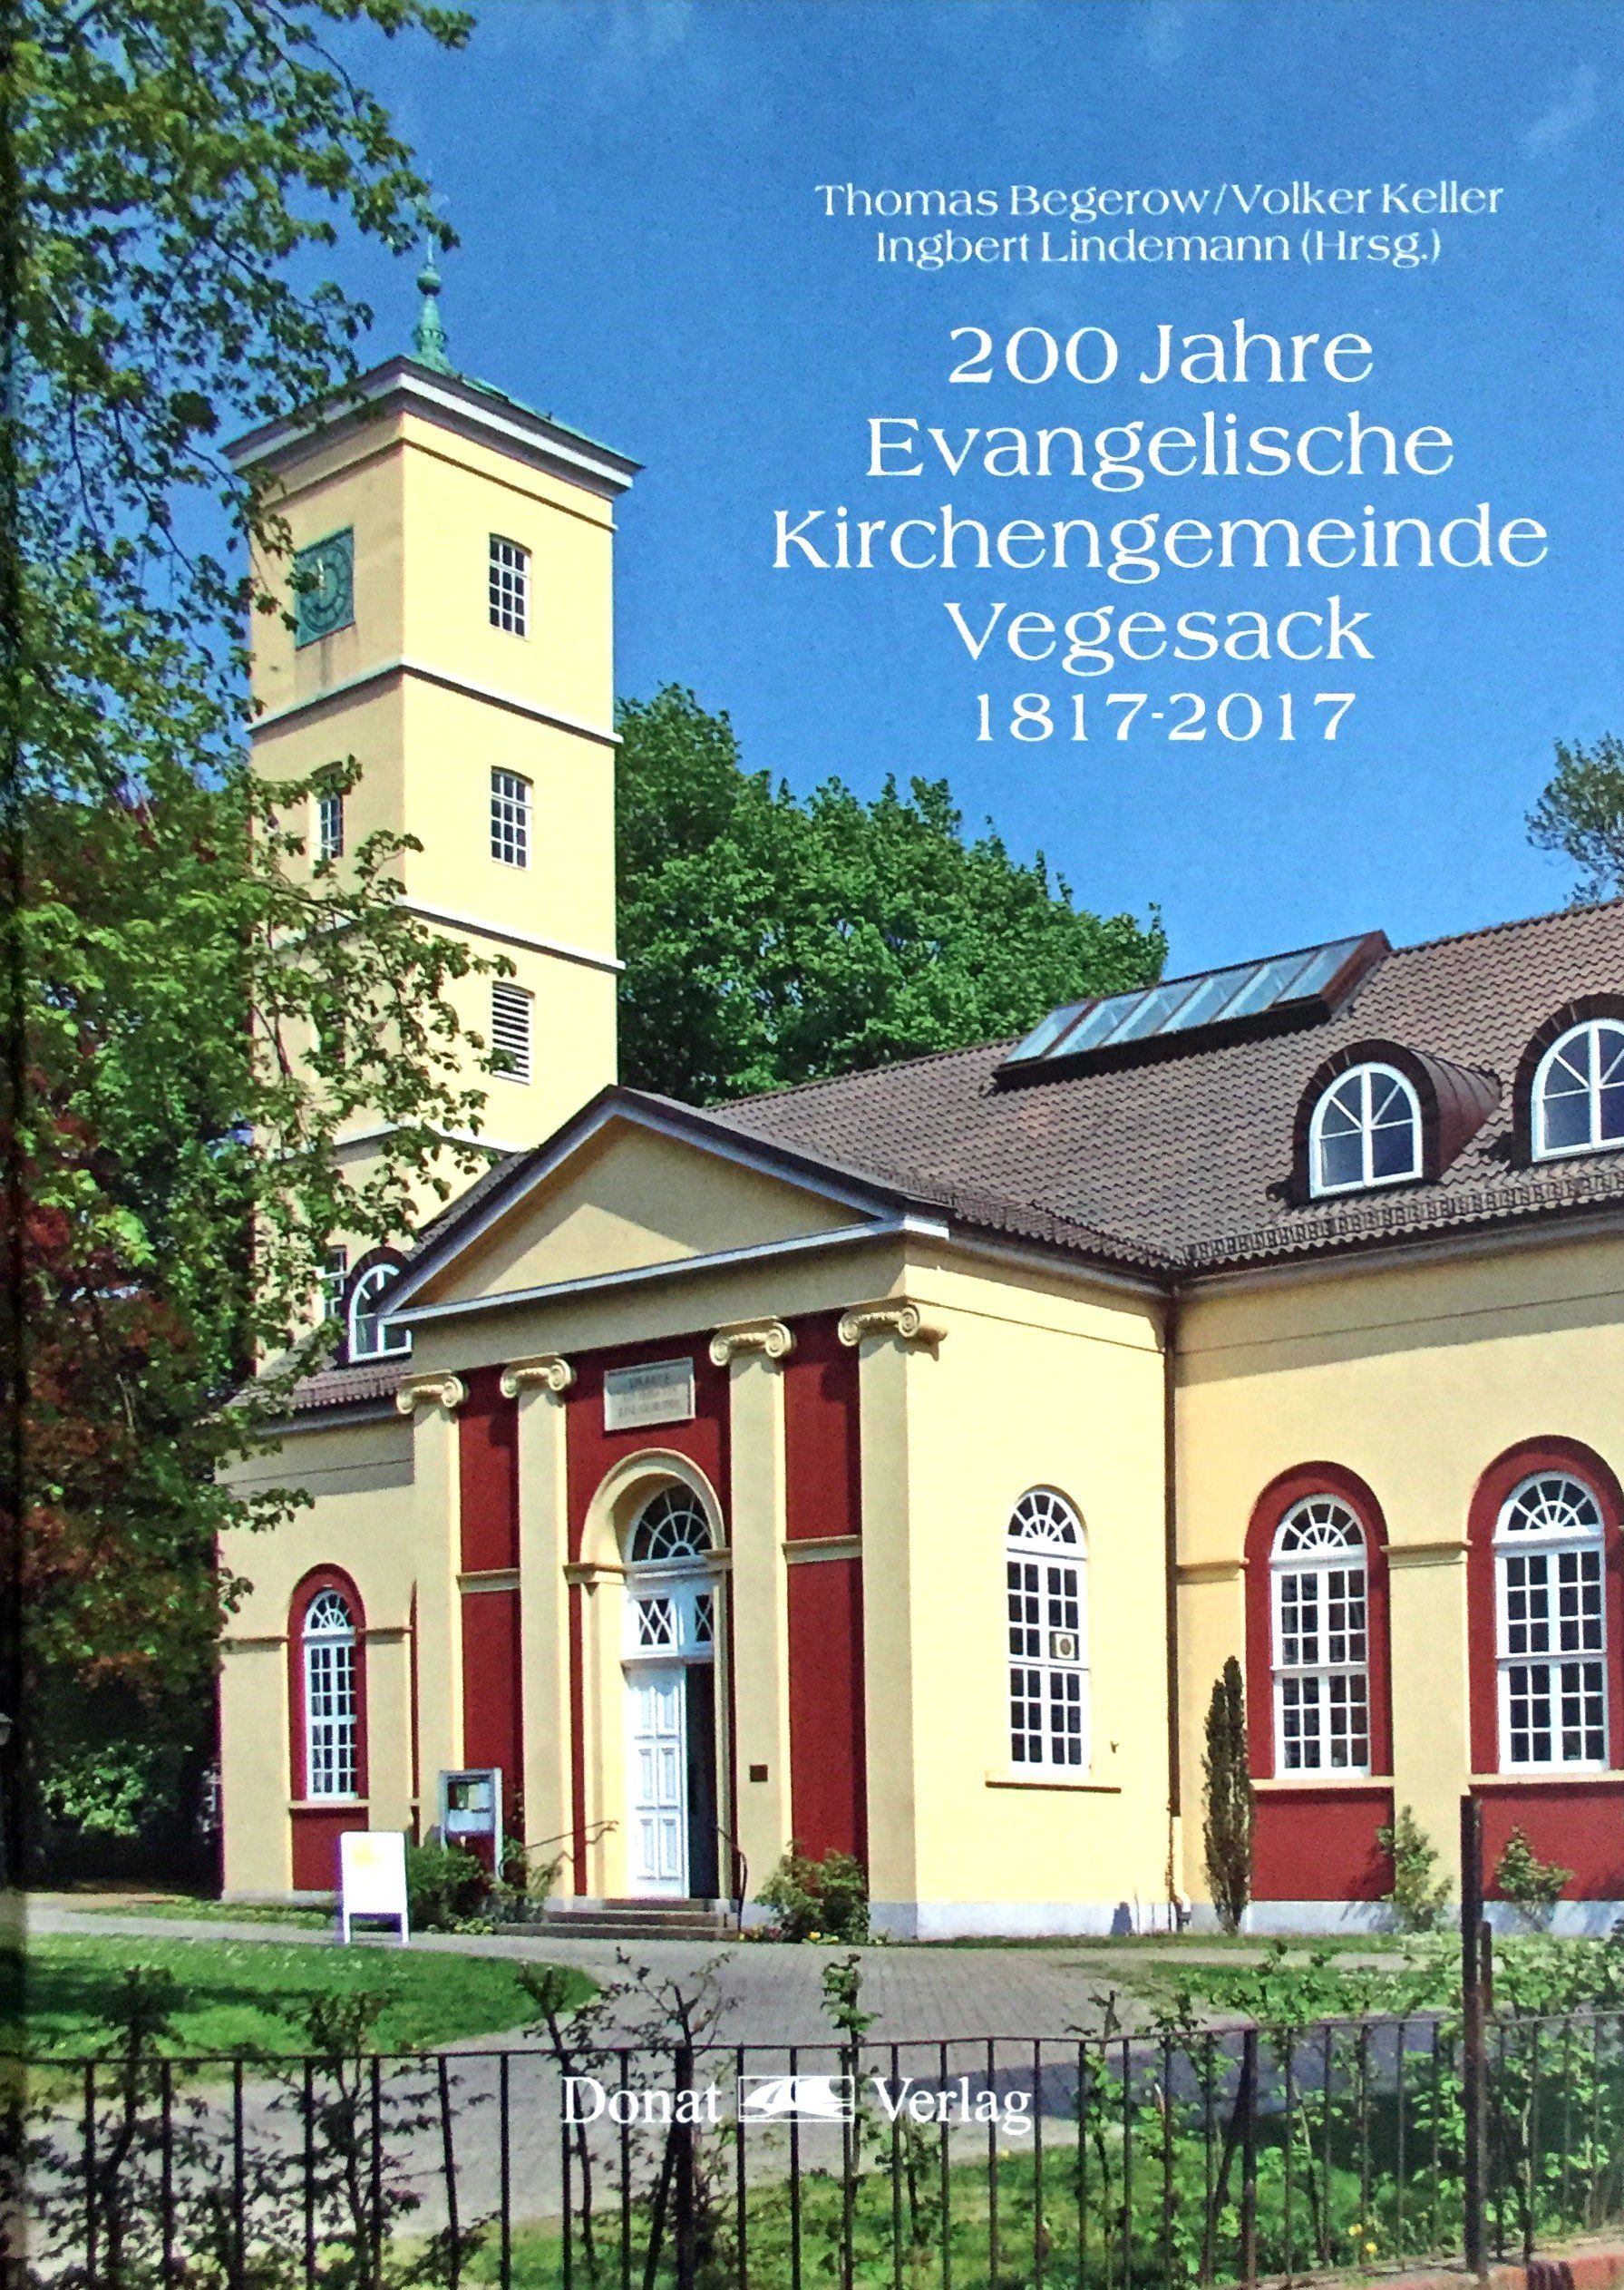 200 Jahre Evangelische Kirchengemeinde Vegesack 1817-2017 - Begerow, Thomas/ Keller, Volker und Ingbert Lindemann (Hrsg.)